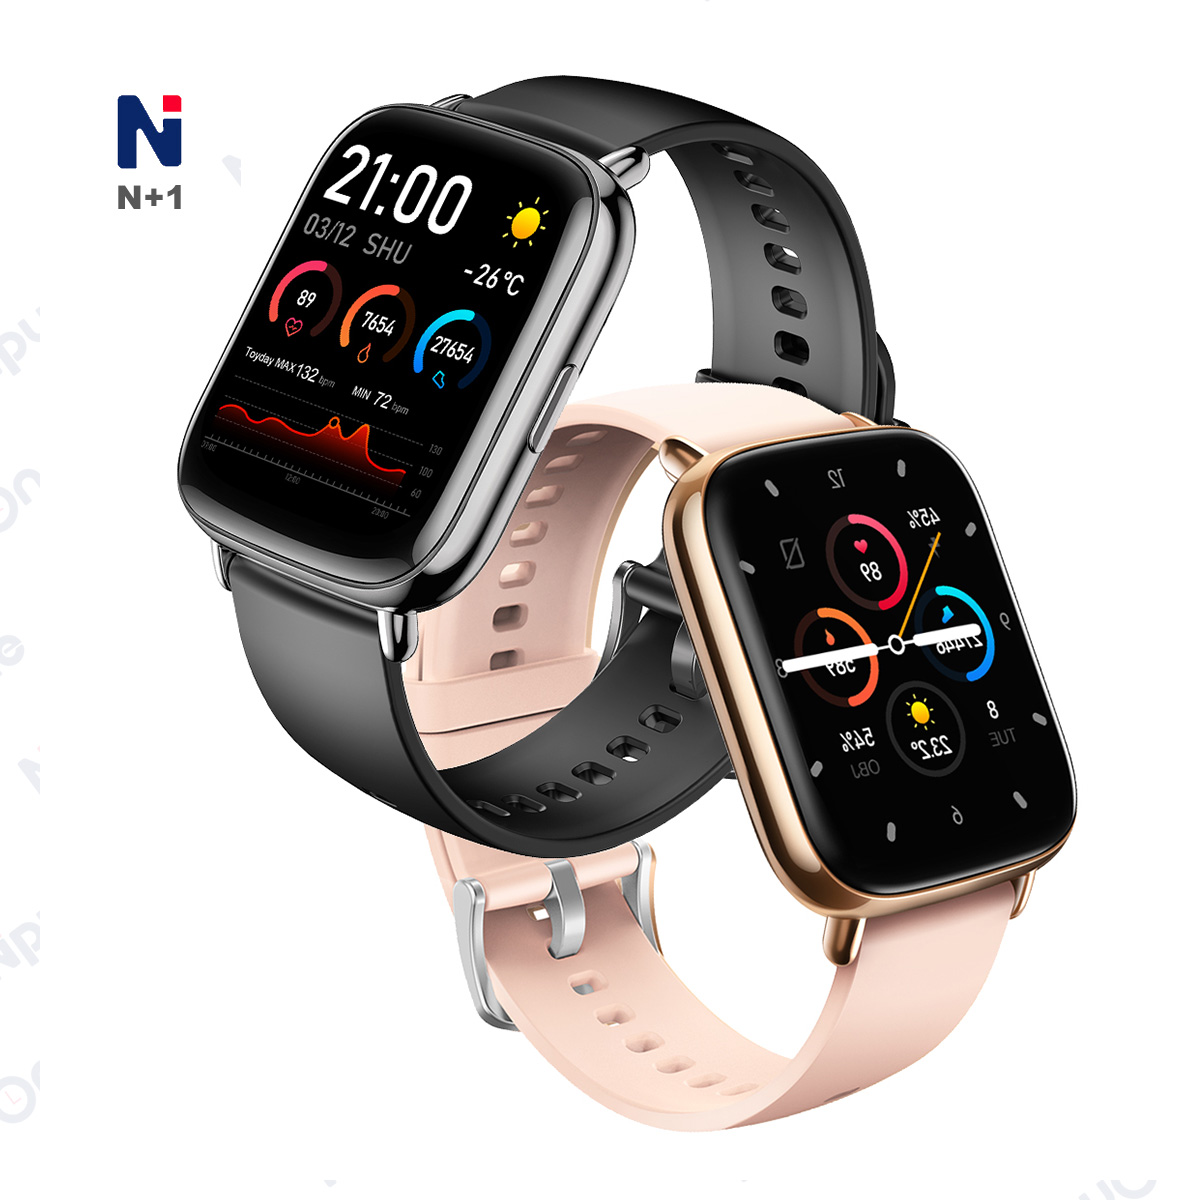 Gorące zegarki Sprzedaż Smart Watch T55 nie przeszkadzają w niskiej cenie za iPhone'a N176